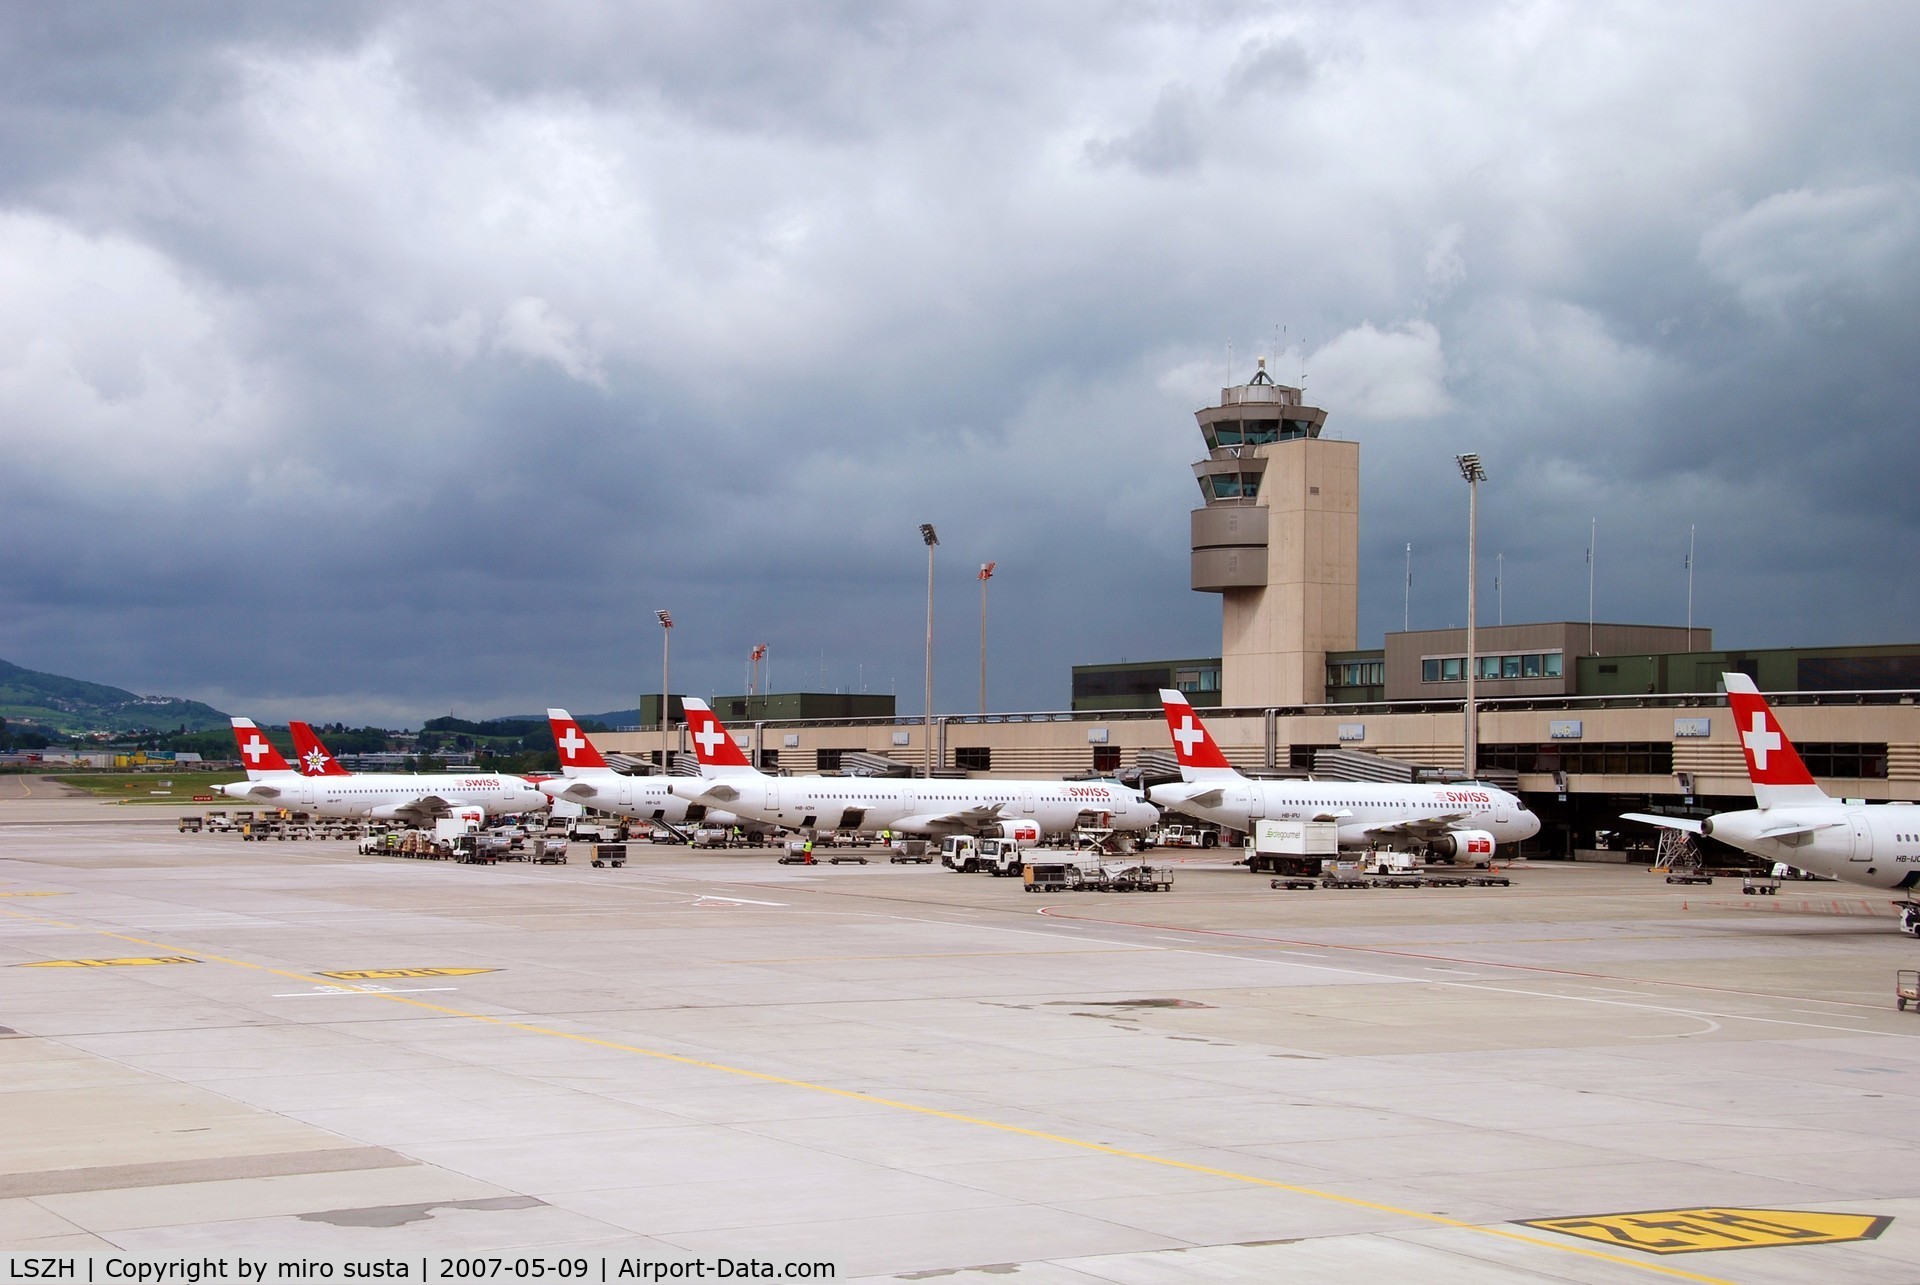 Zurich International Airport, Zurich Switzerland (LSZH) - Zurich-Kloten International Airport